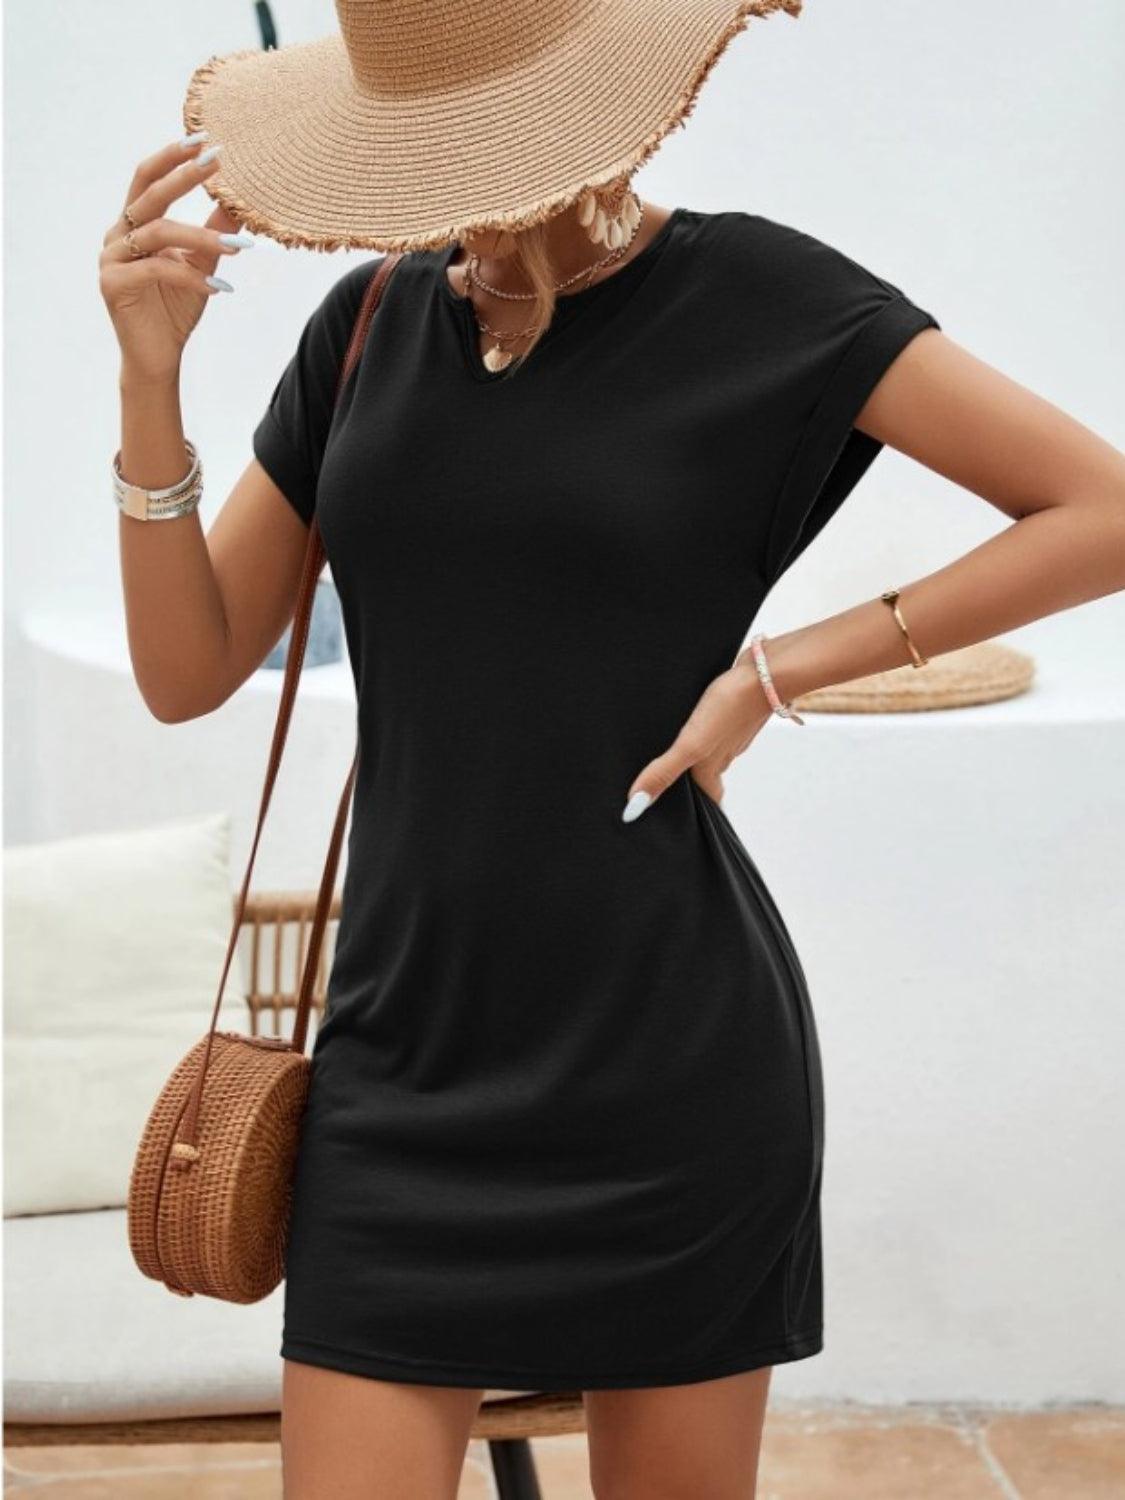 Bona Fide Fashion - Notched Short Sleeve Mini Tee Dress - Women Fashion - Bona Fide Fashion